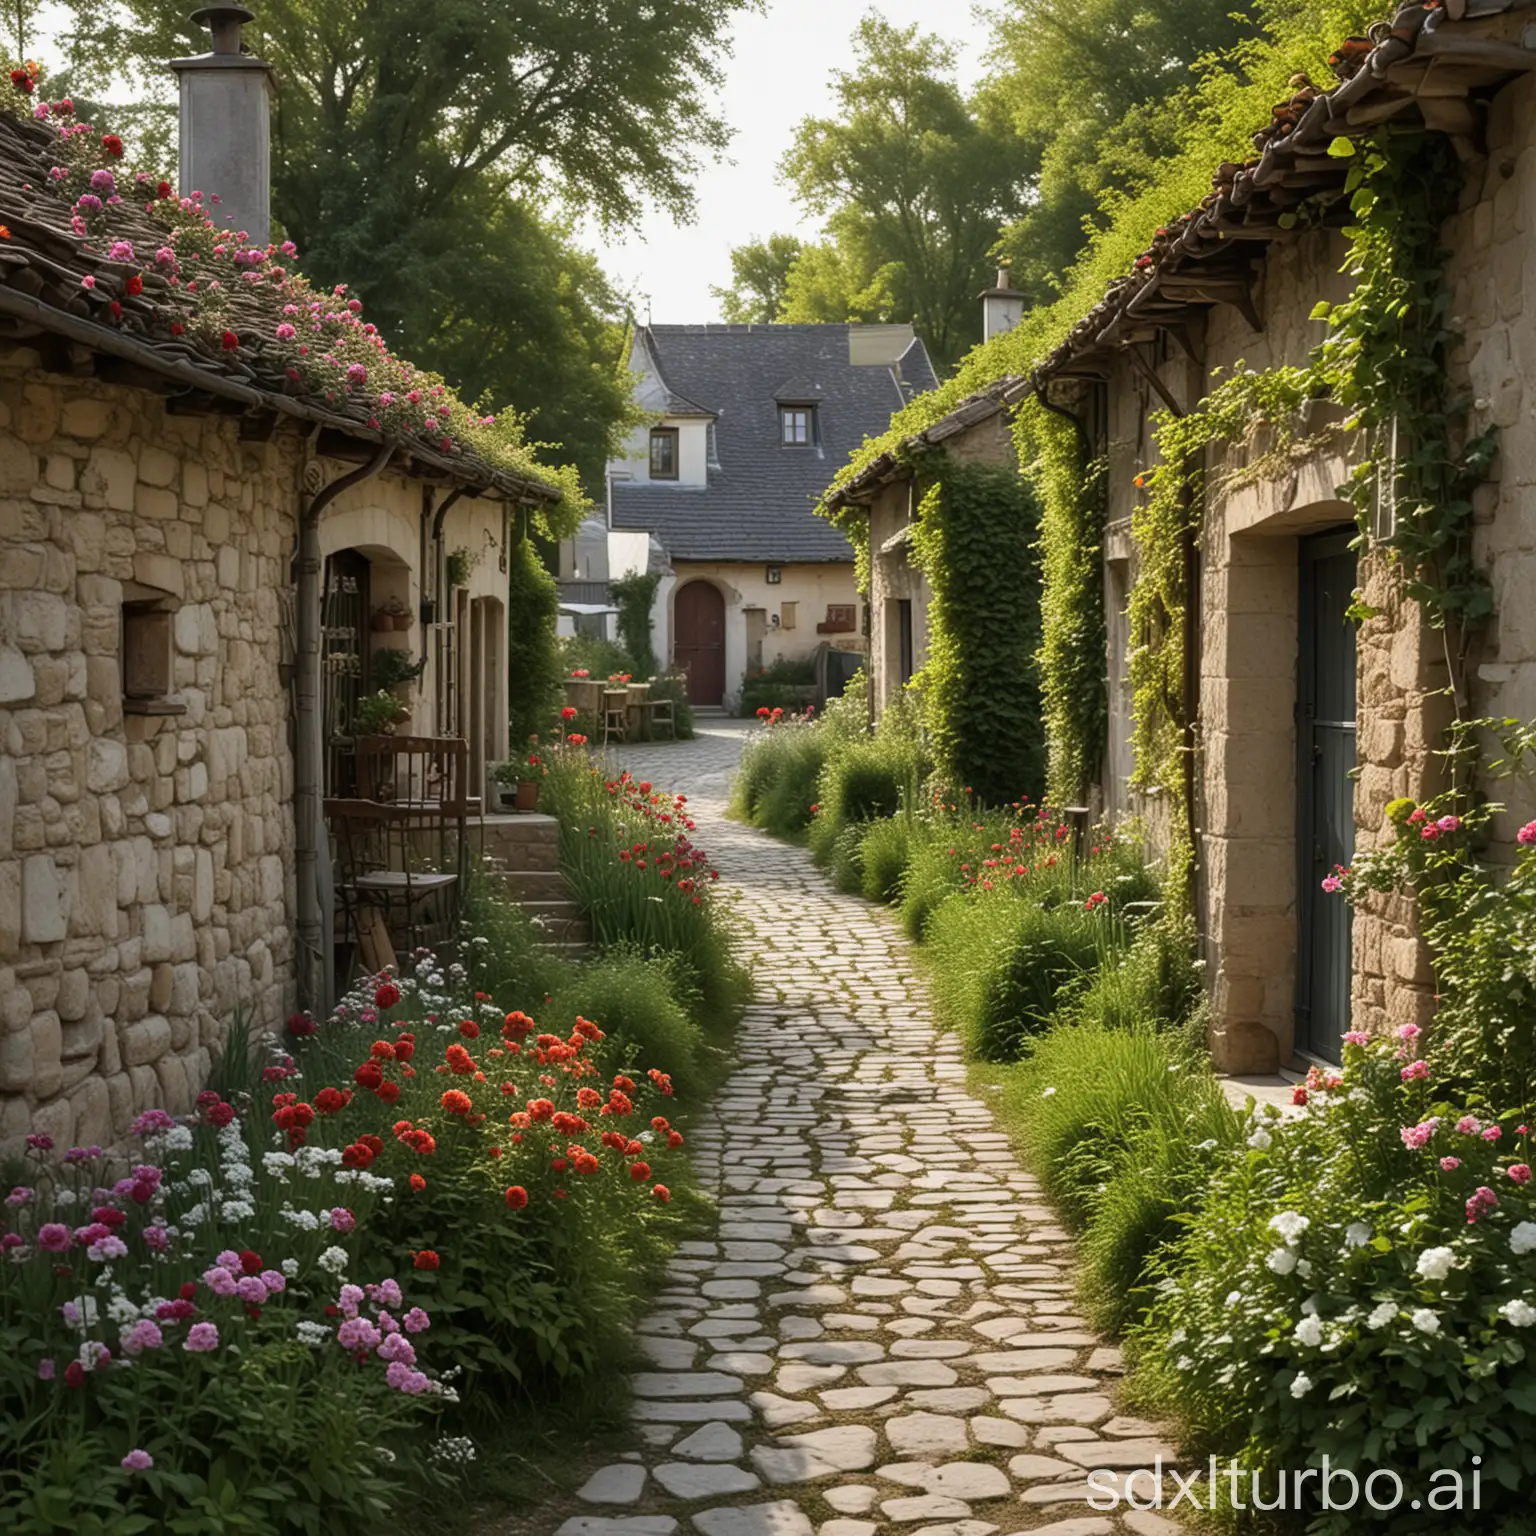 Romantic-Village-Scene-with-a-Quaint-Small-Path